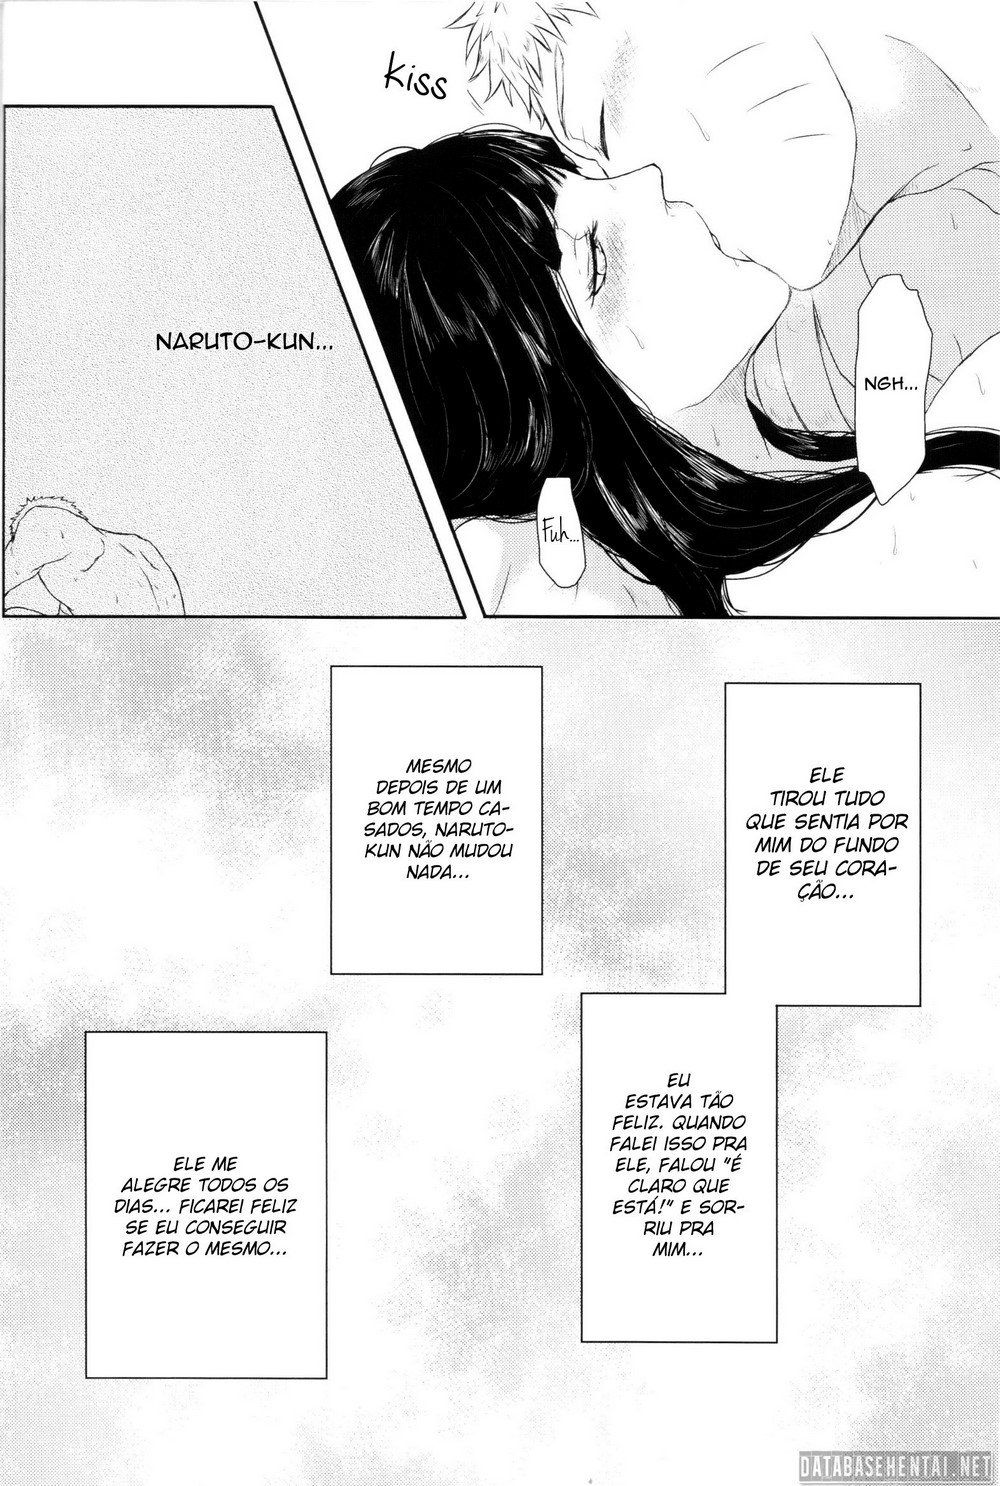 Hinata na sua primeira vez com Naruto (7)